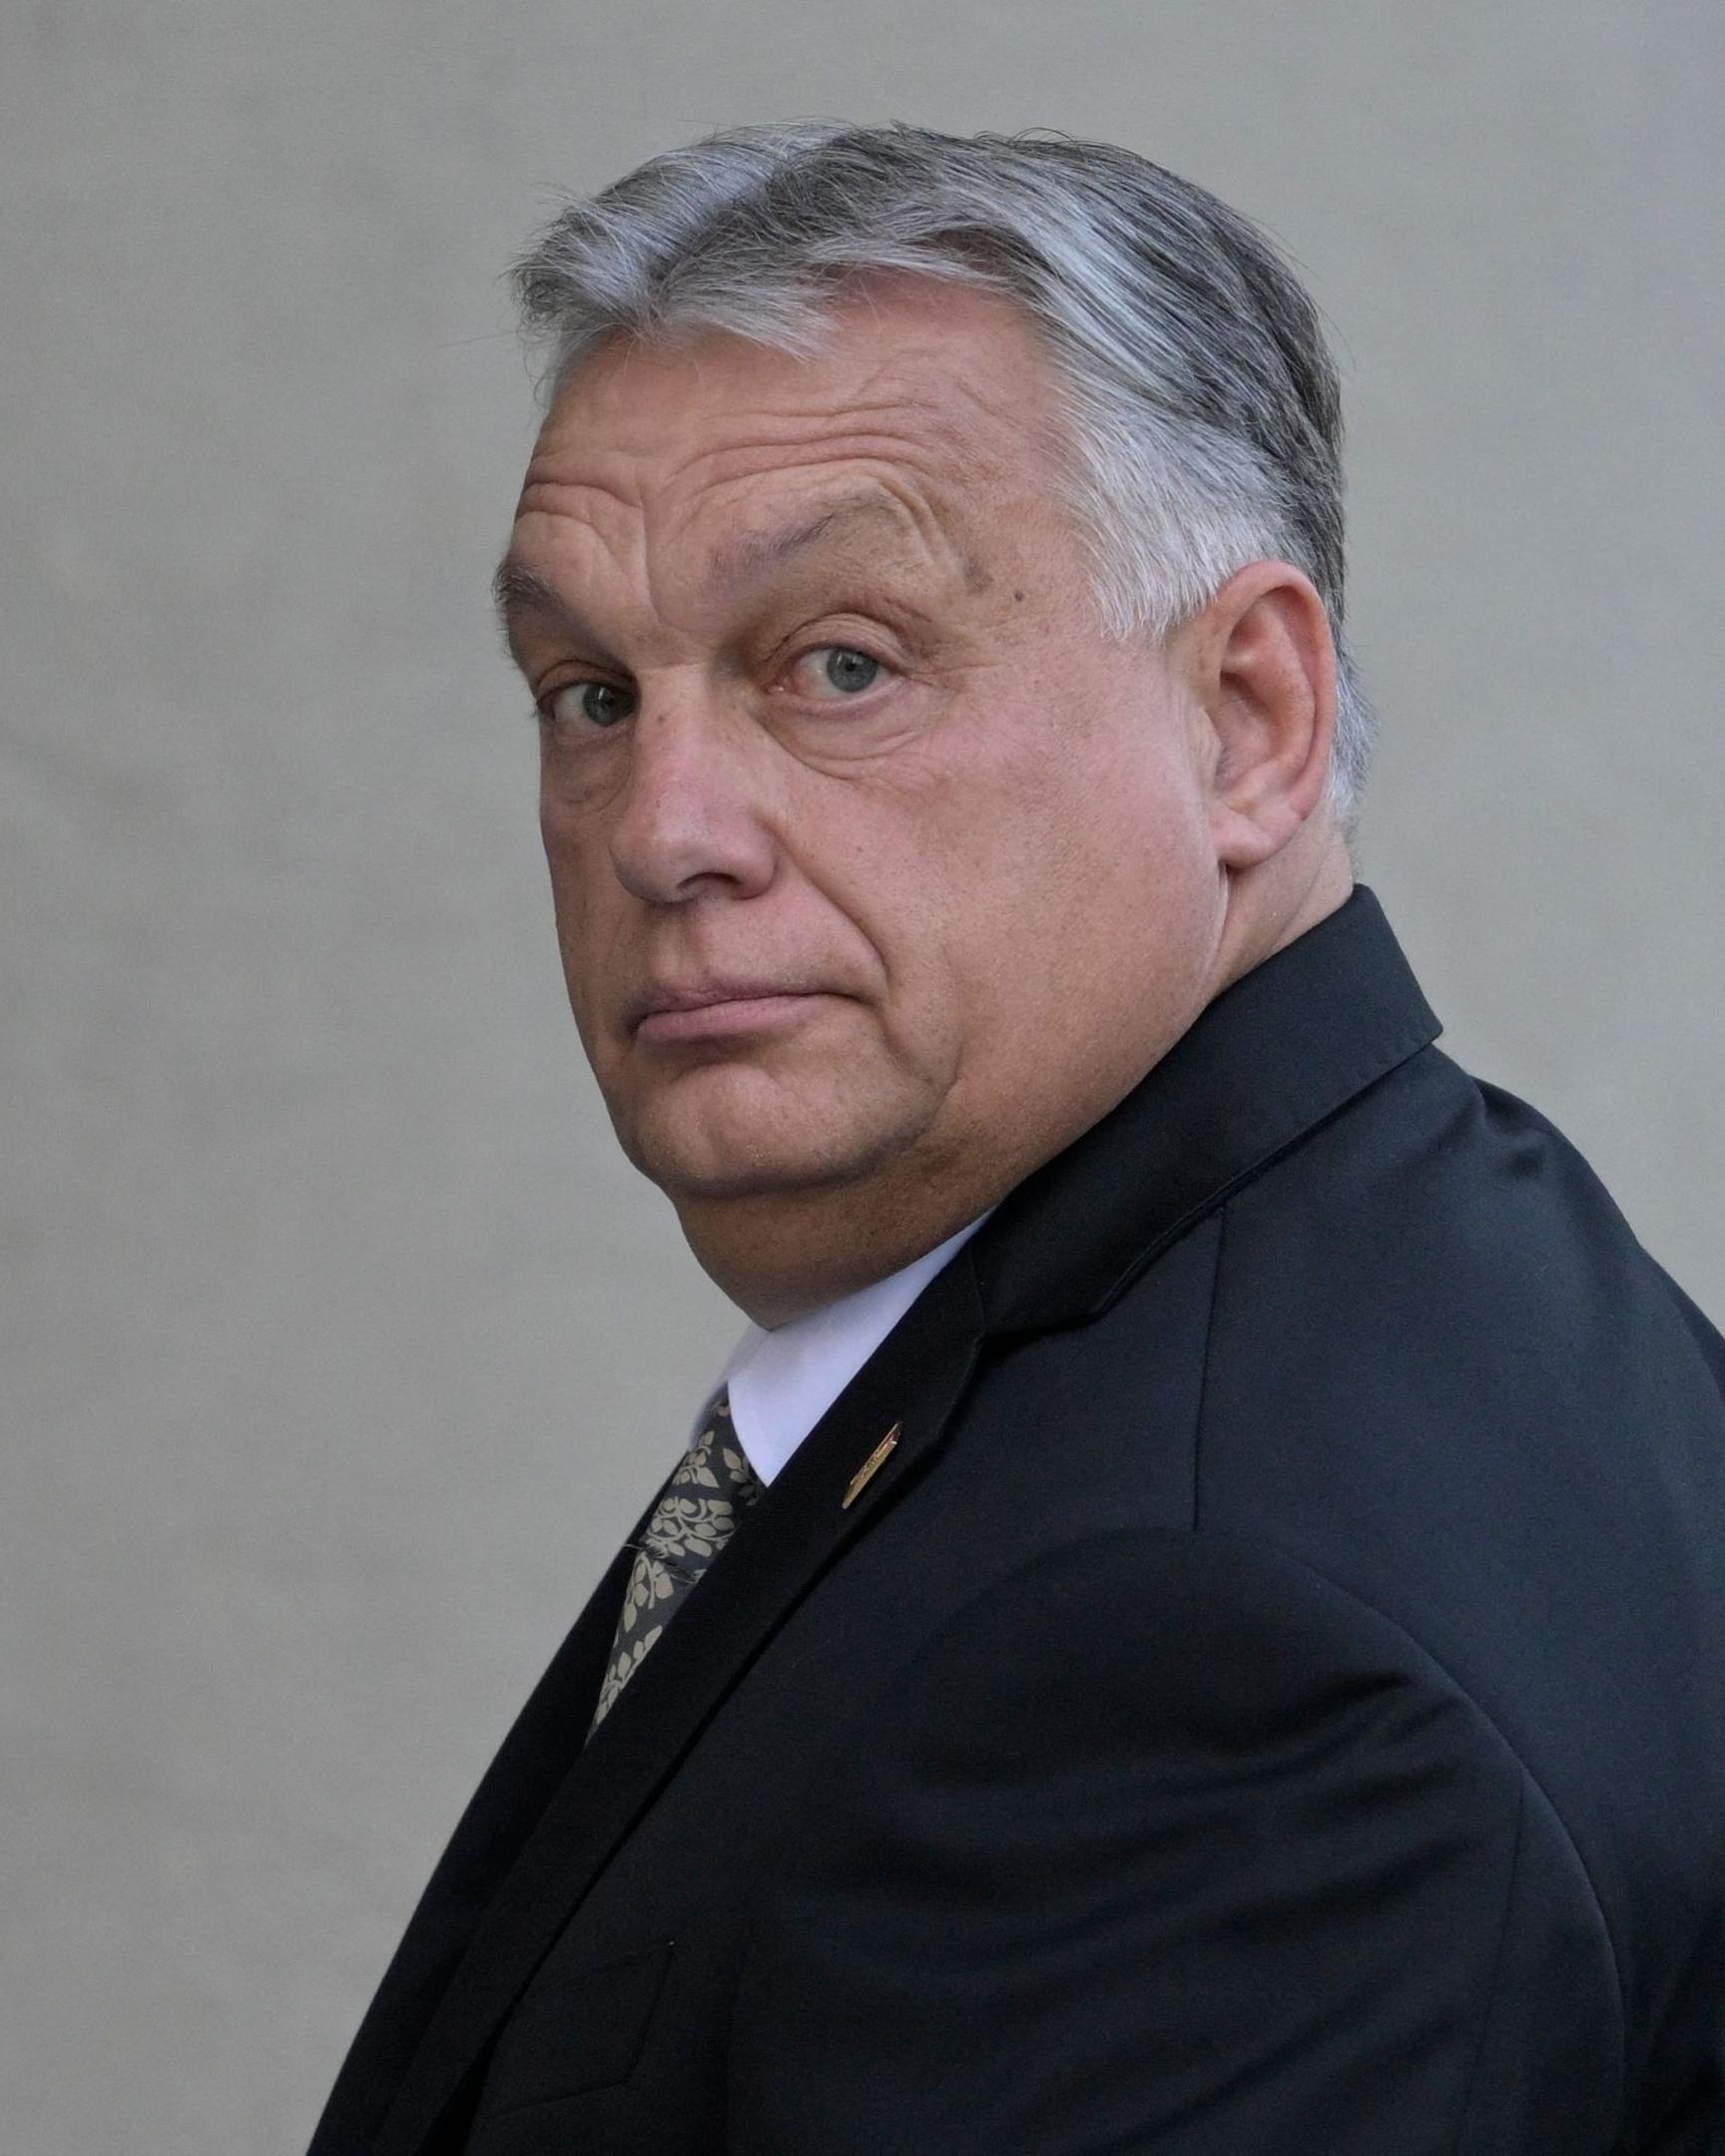 Österreichs Rechtspopulisten biedern sich gegenüber Ungarns Regierungschef Viktor Orbán an.